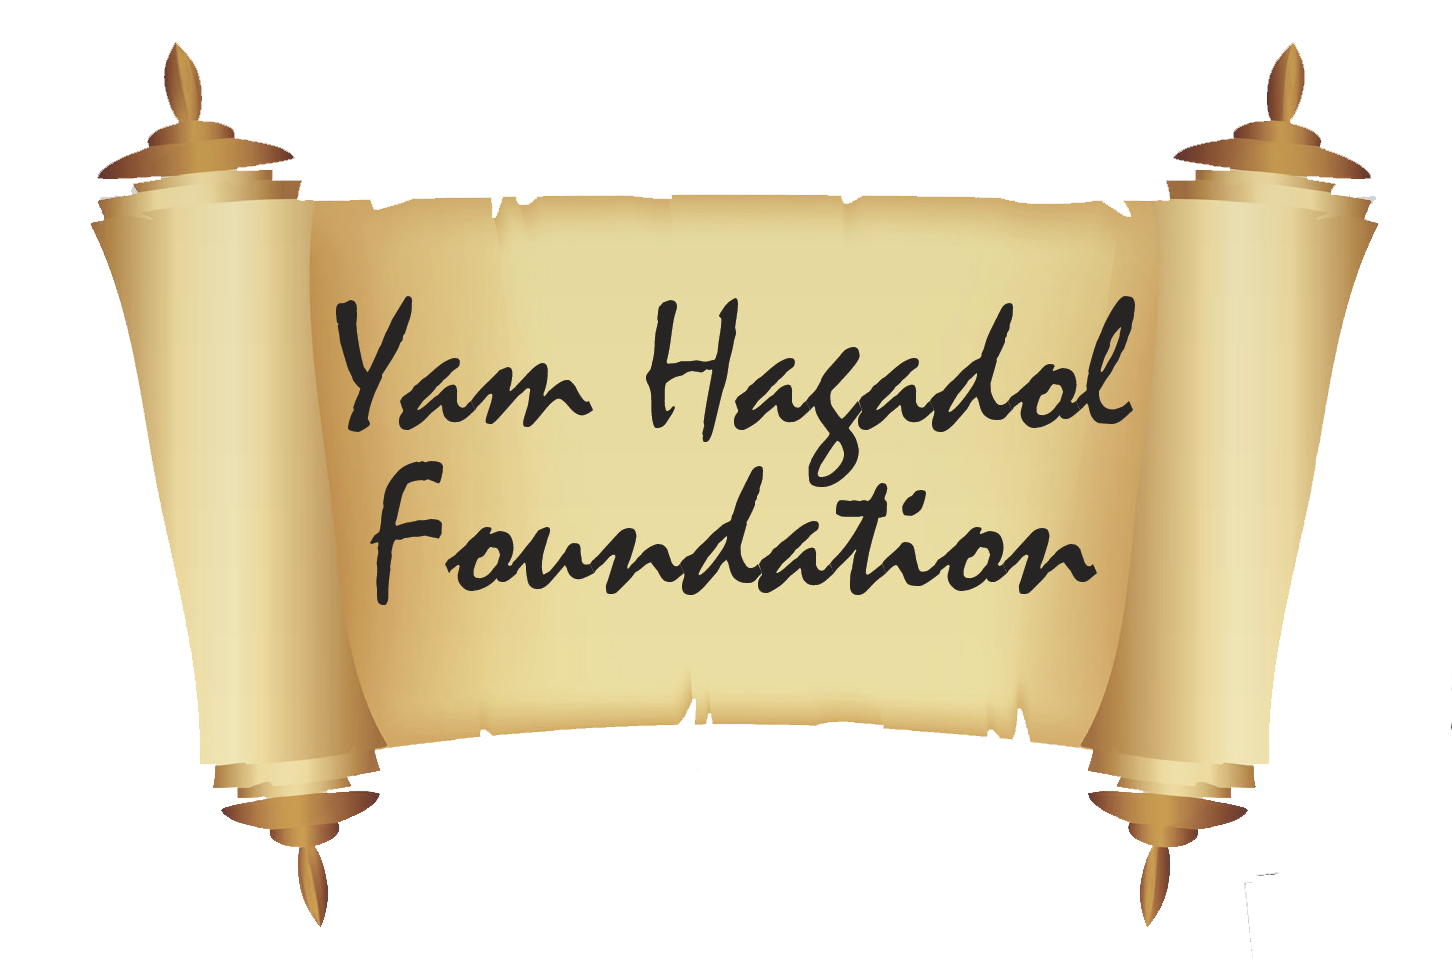 Yam Hagadol Foundation